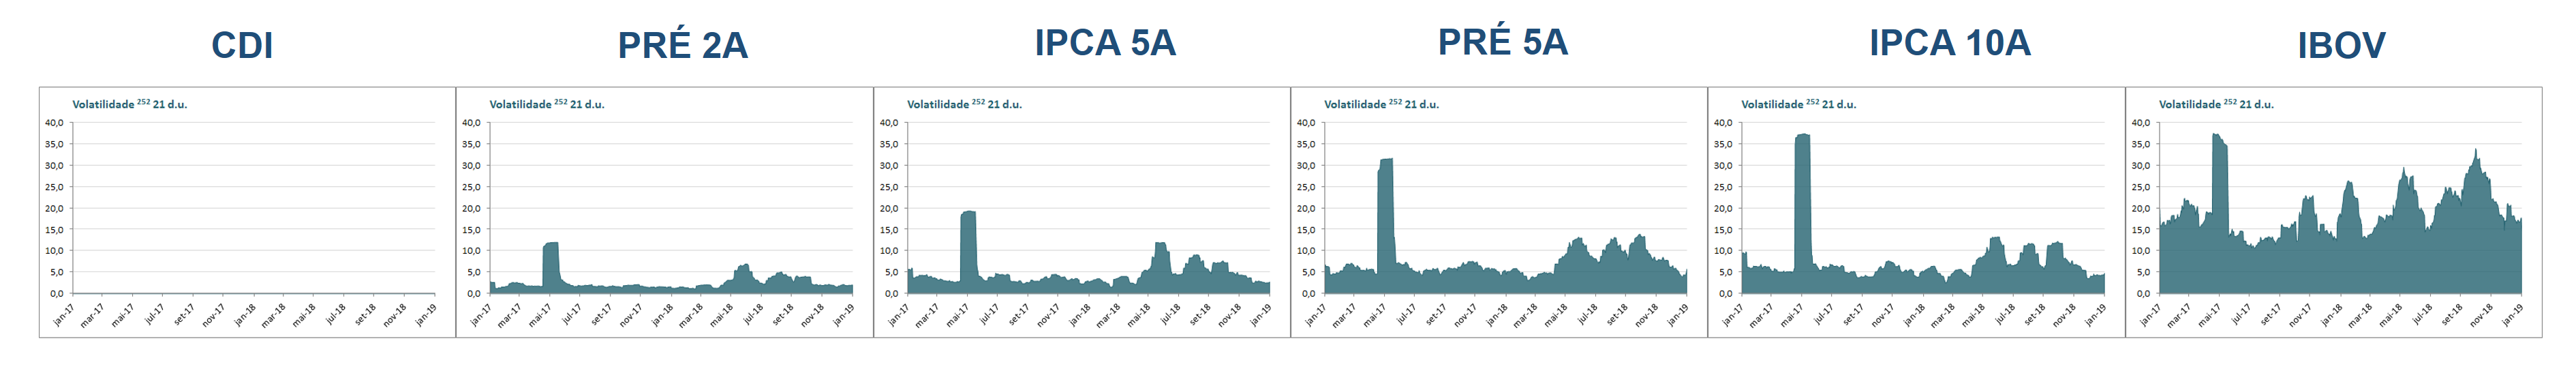 Desvio padrão amostral media movel 21 dias das rentabilidades do CDI Prefixados e IPCA